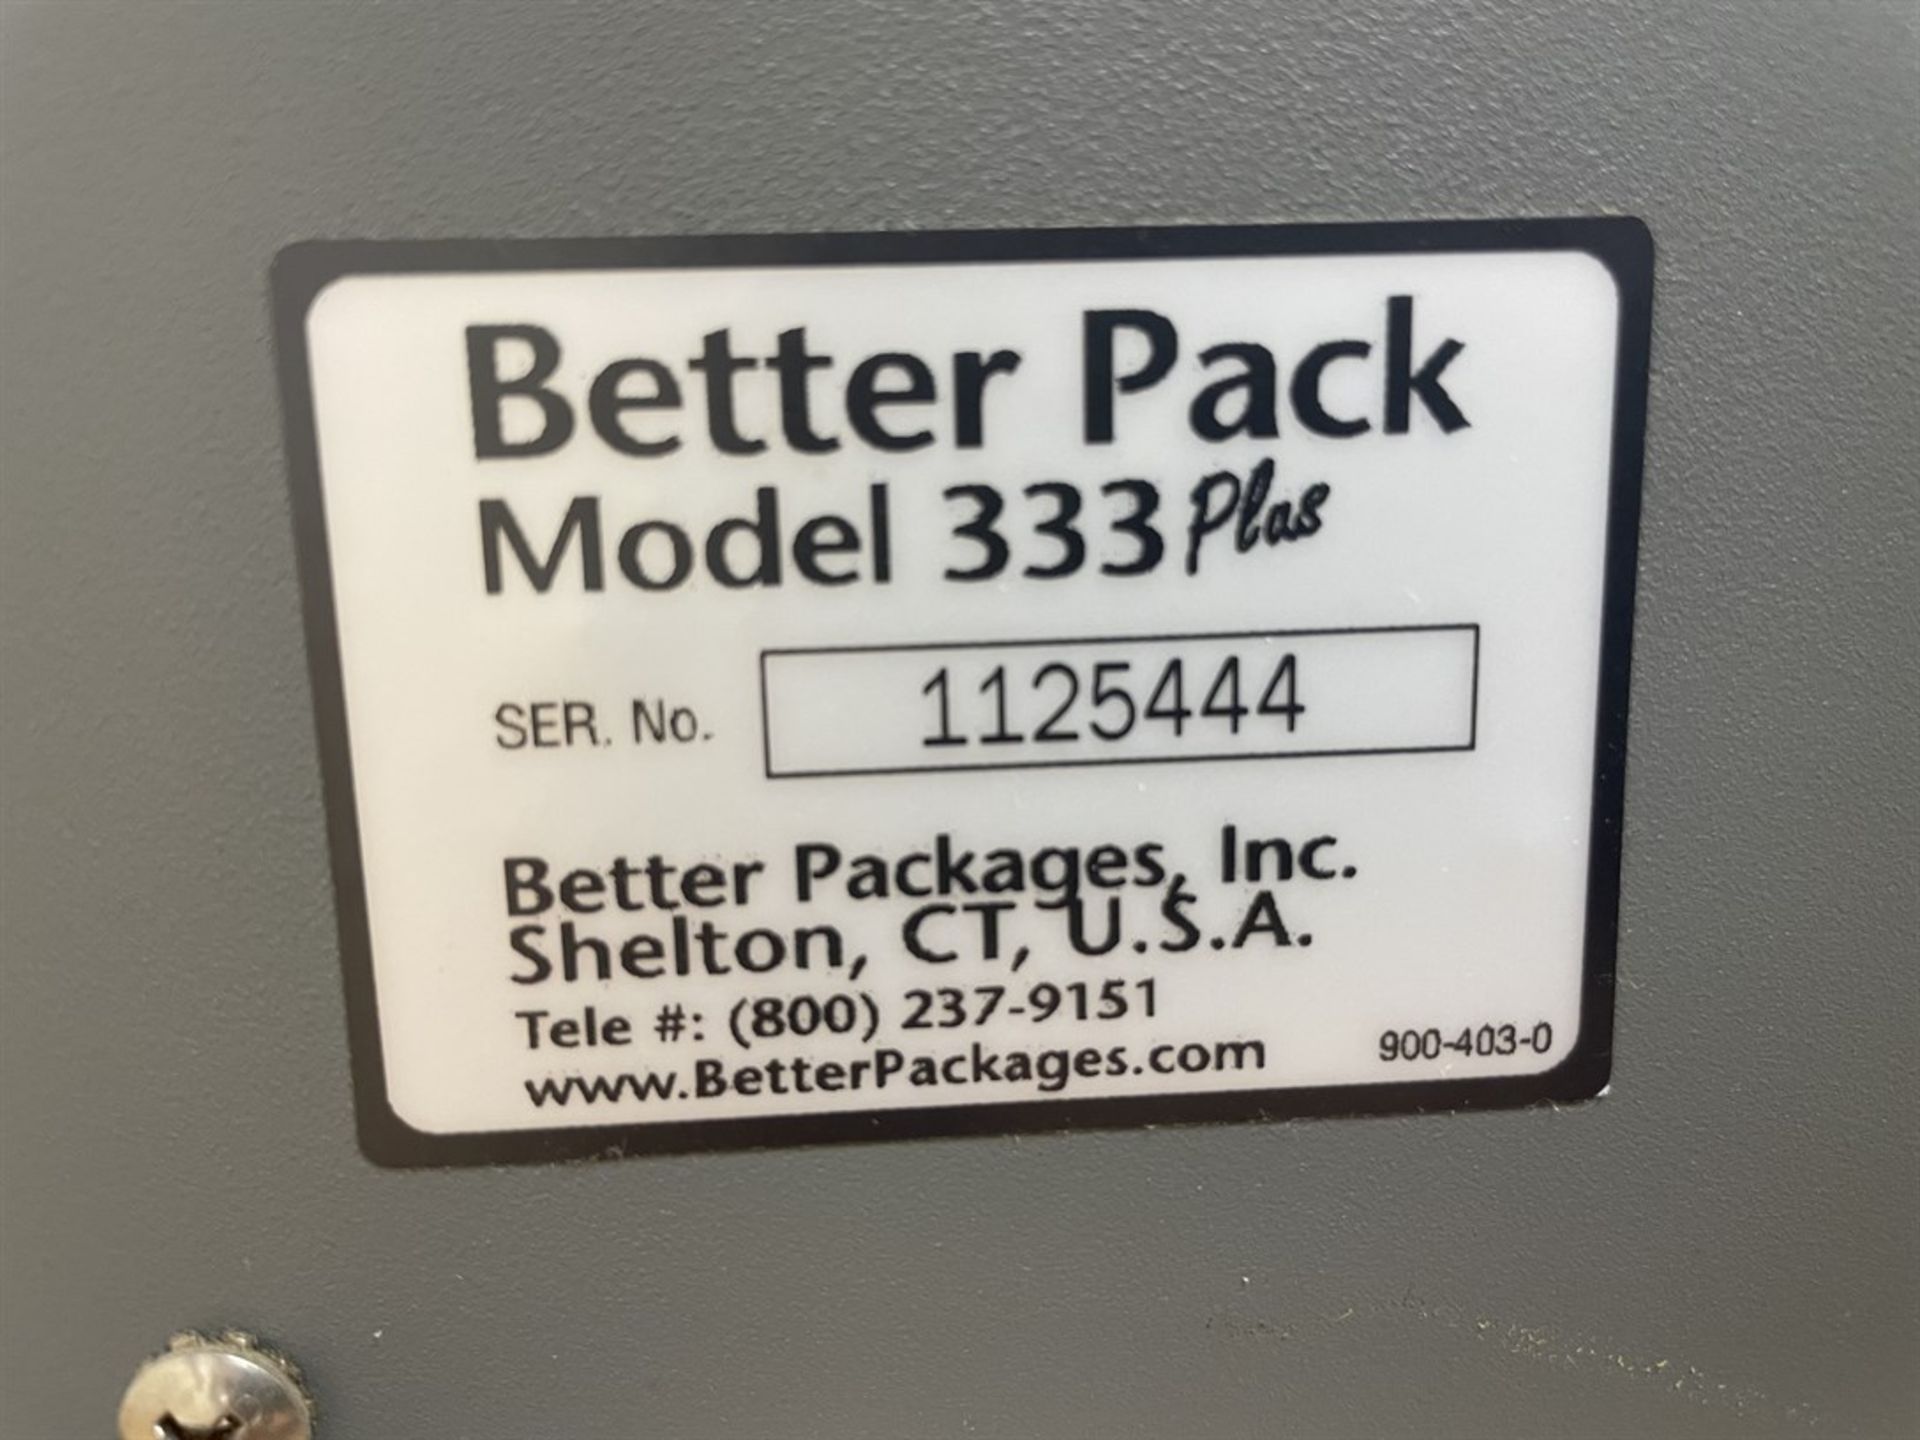 Better Pack 333 Plus Tape dispenser. s/n 1125444 - Image 2 of 2